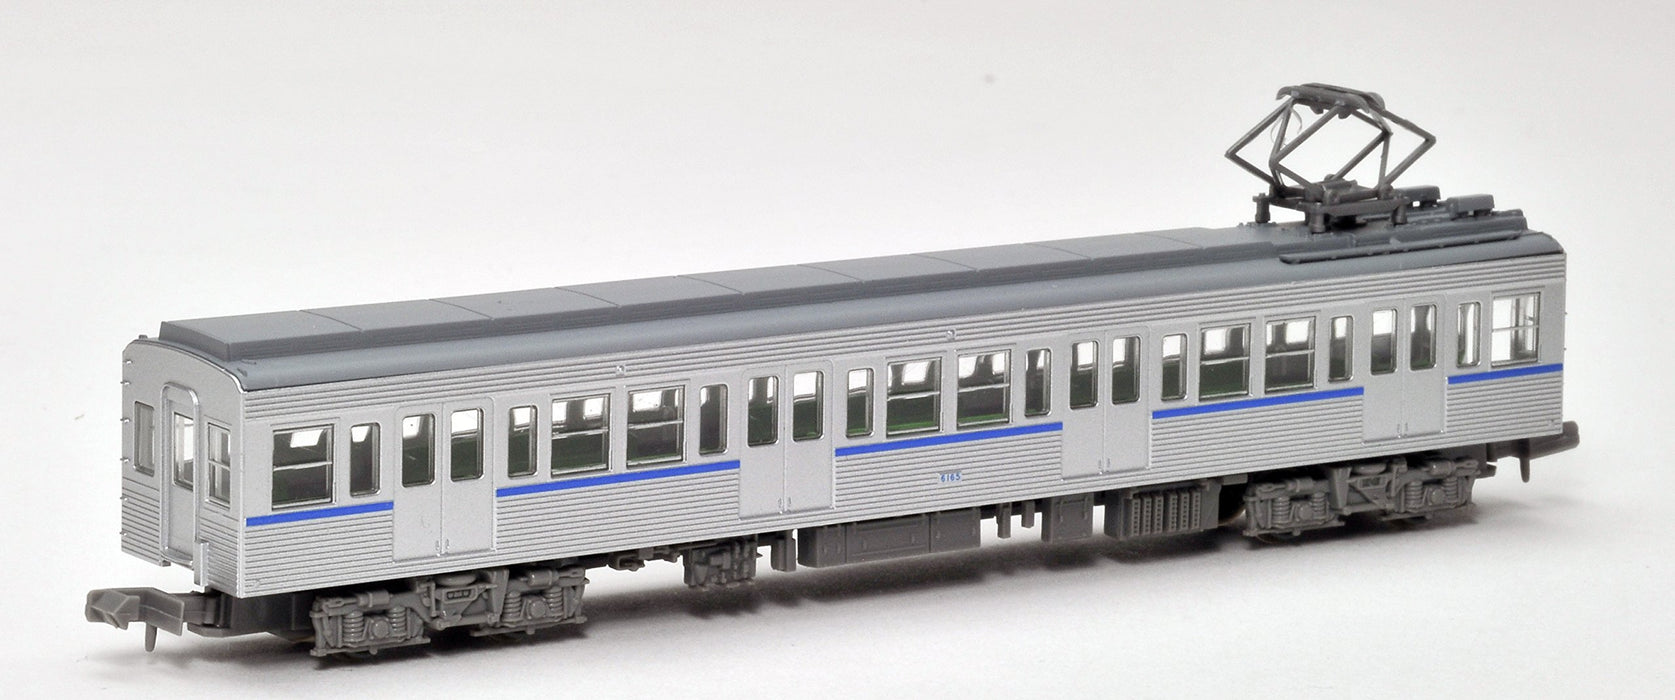 TOMYTEC Tokyo Metropolitan Bureau of Transportation Typ 6000 Nicht klimatisiert/ohne Frontgurt Mita Line 6 Wagen Set Spur N